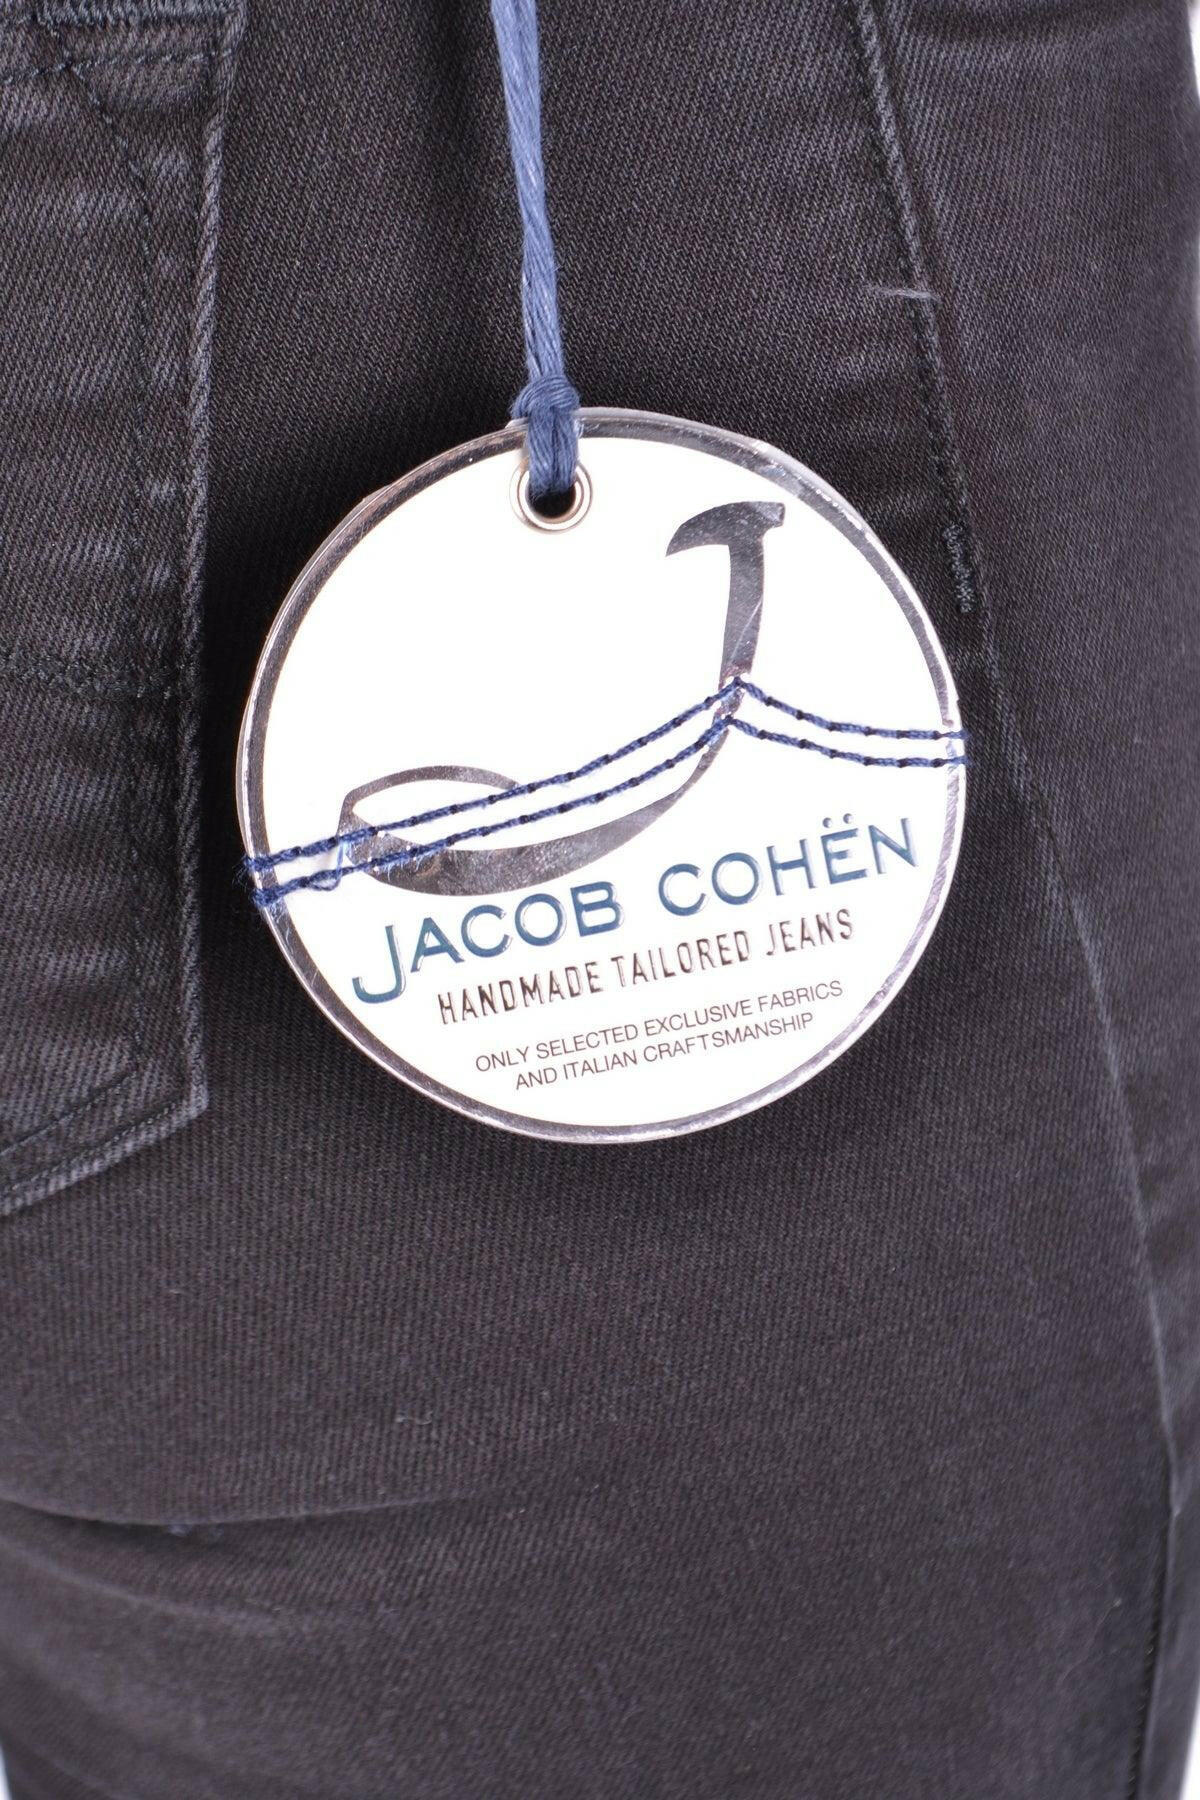 Jeans Jacob Cohen - GENUINE AUTHENTIC BRAND LLC